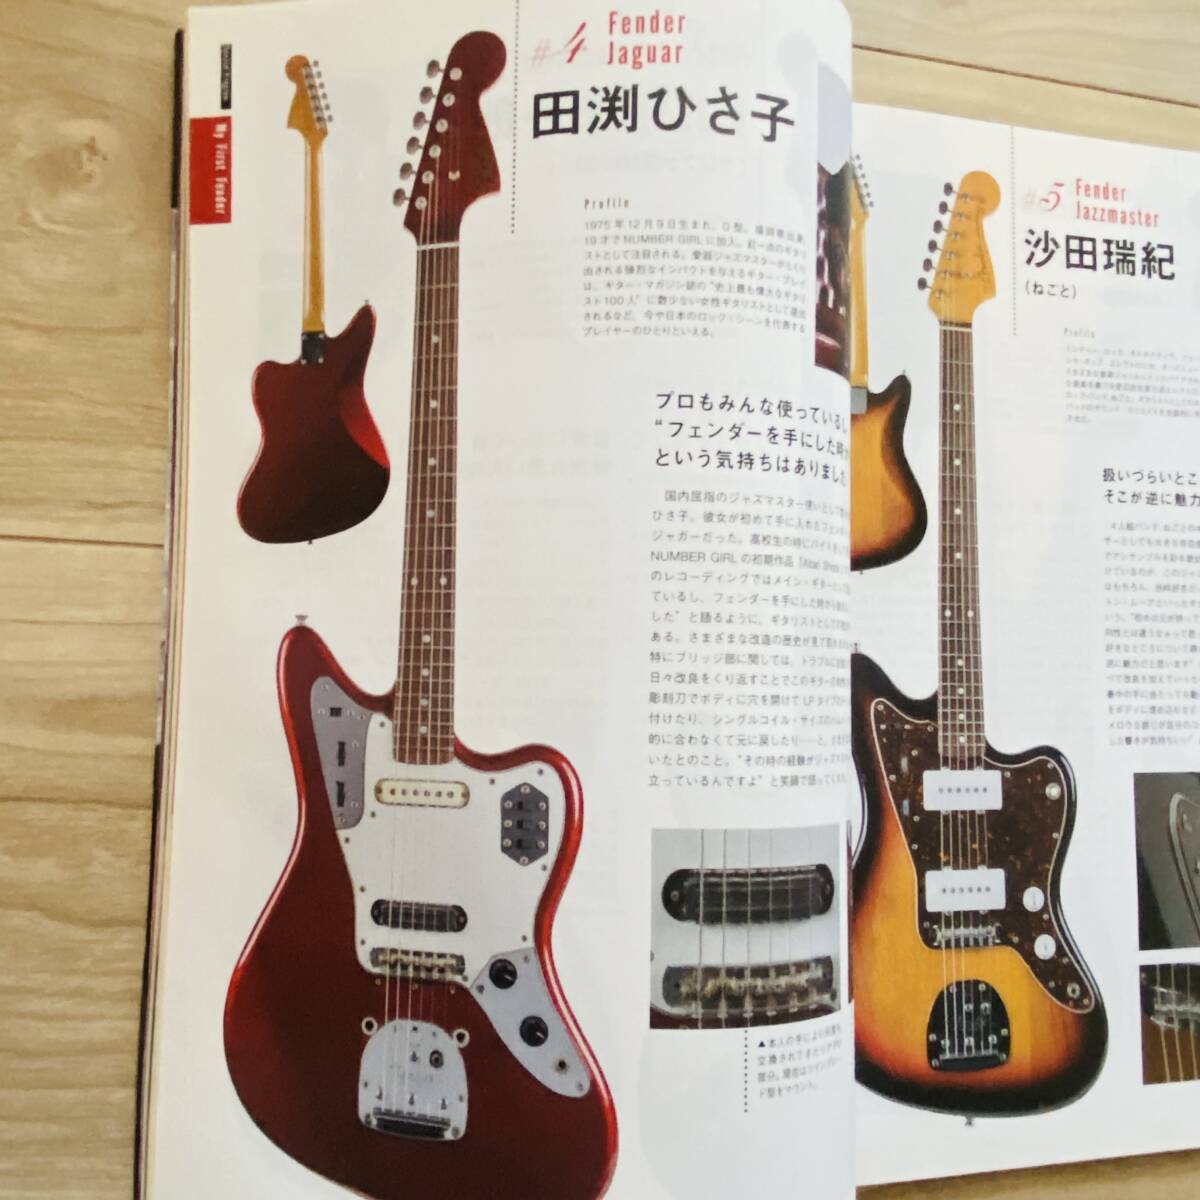 ギターマガジン フェンダージャパン特集 2018年1月号 guitar magazine fender Japan_画像4